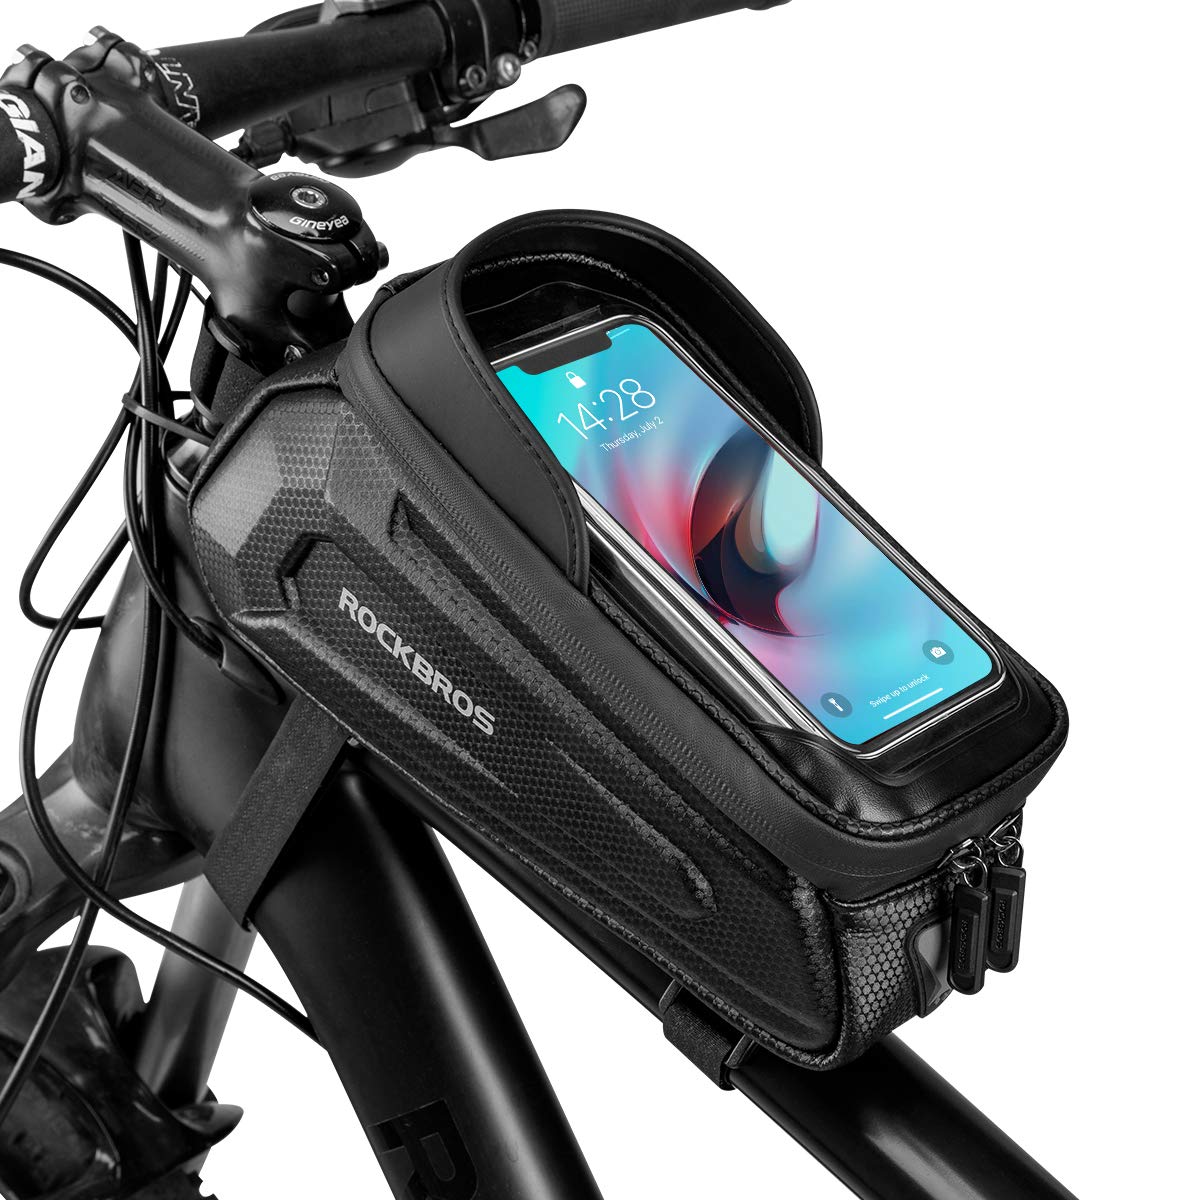 ROCKBROS Bike Top Tube Bag with Mobile Phone Holder Waterproof